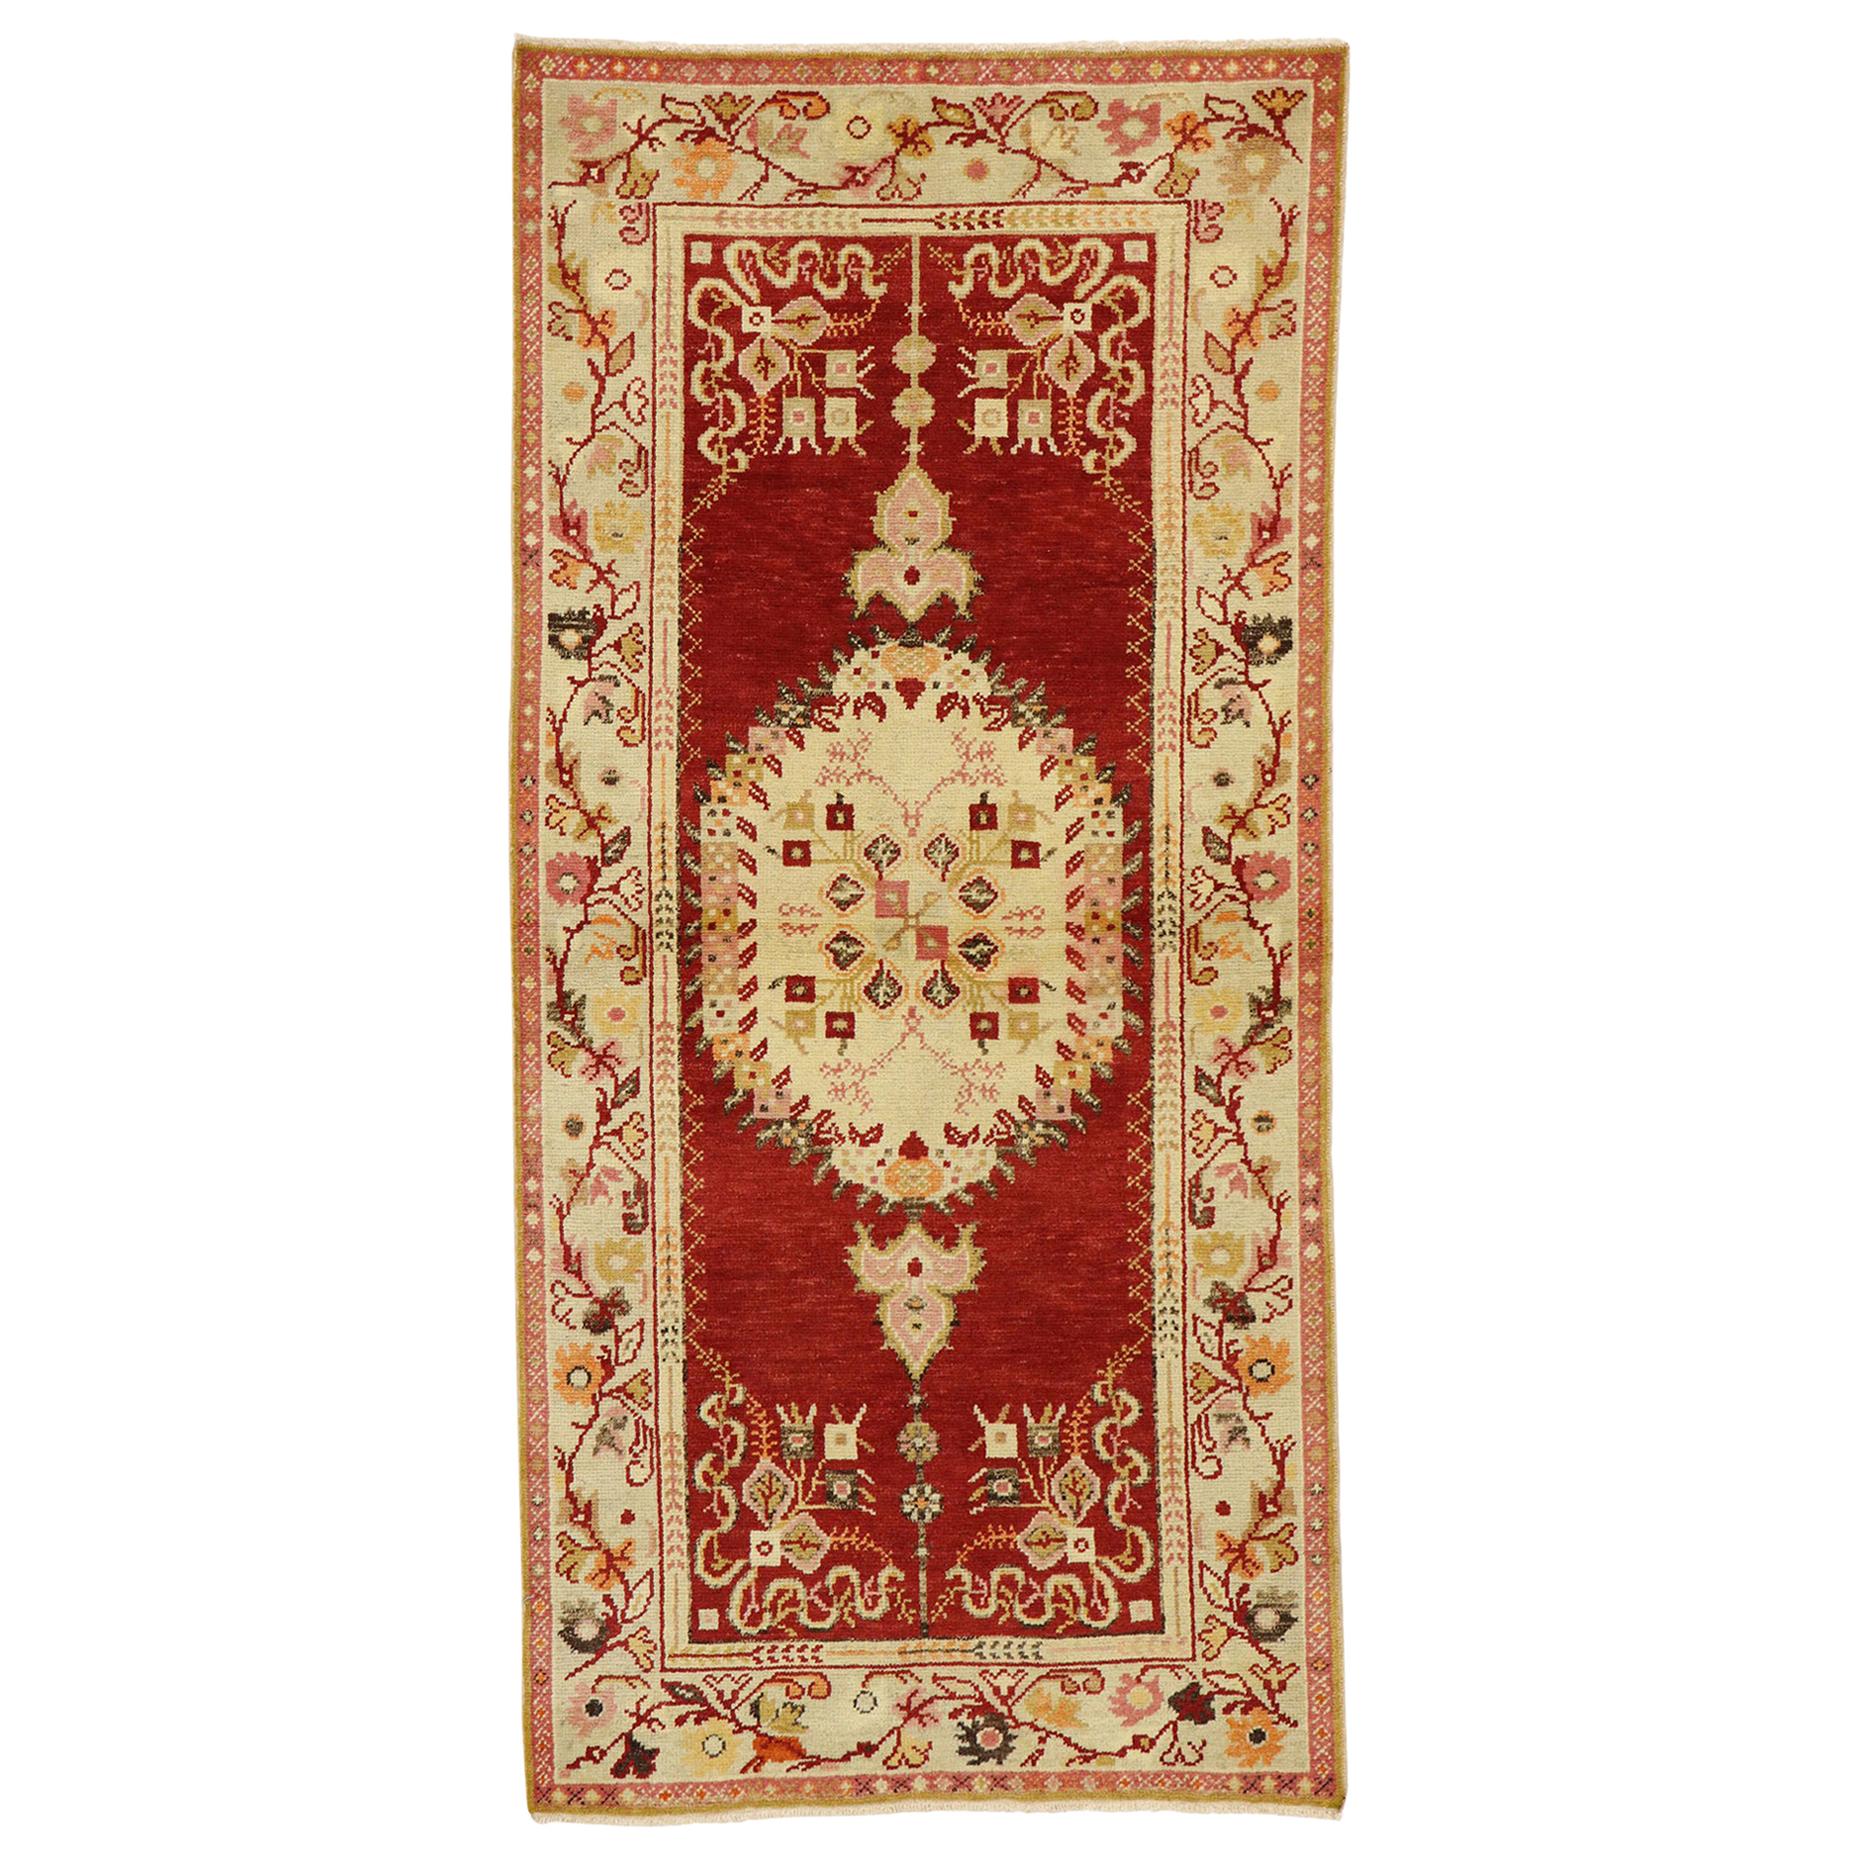 Türkischer Oushak-Teppich im französischen Rokoko-Stil, Eingangs- oder Foyer-Teppich